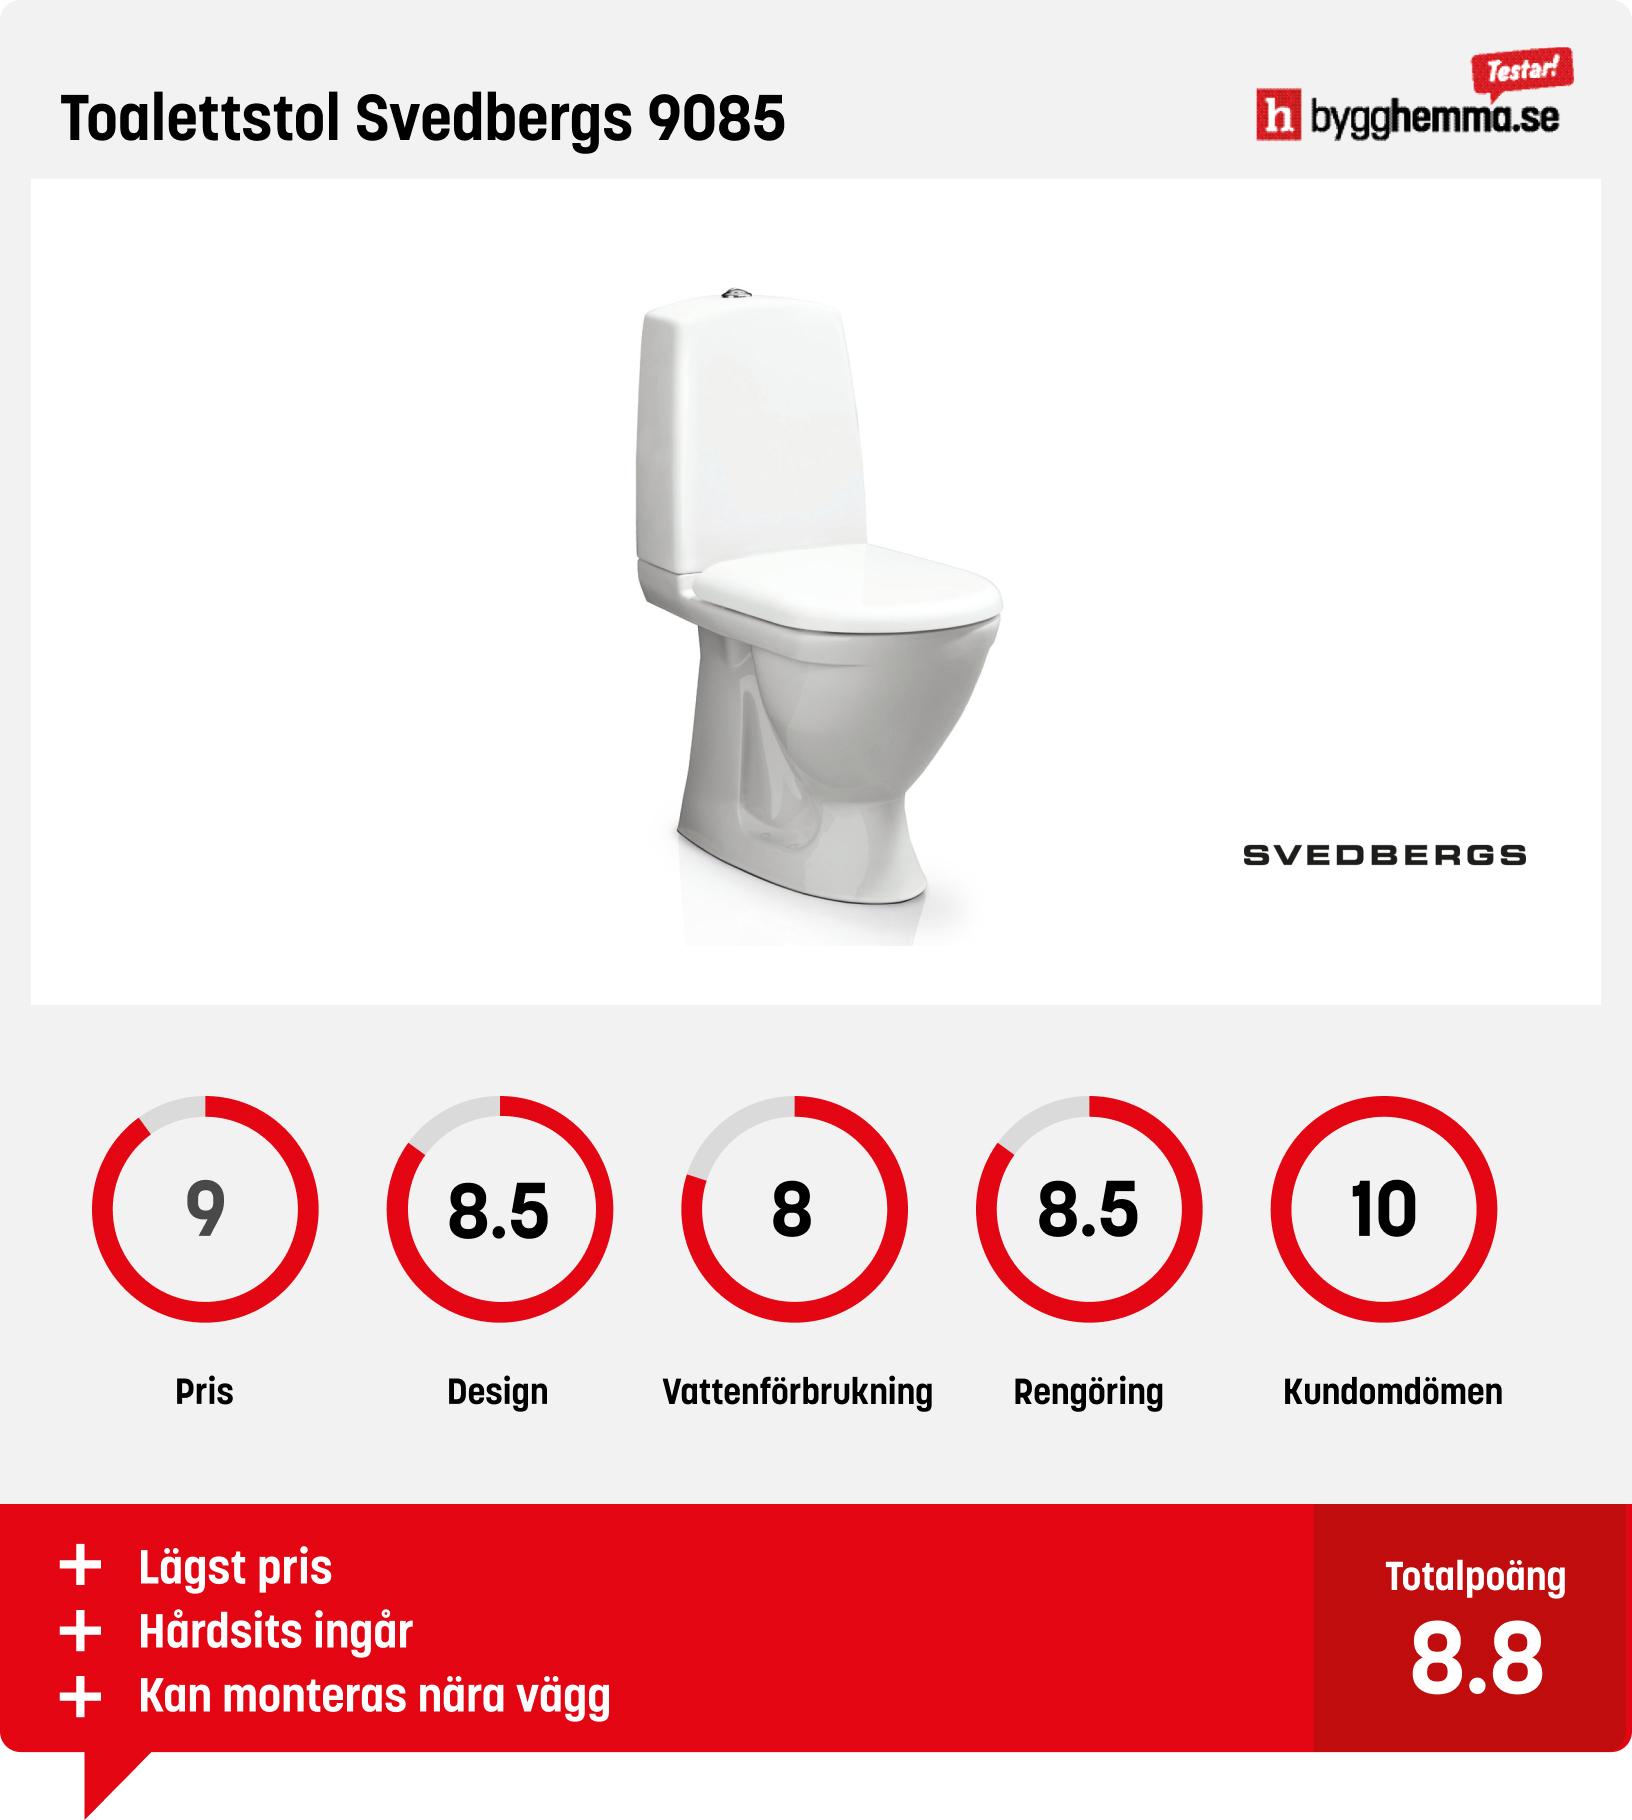 Toalettstol bäst i test - oalettstol Svedbergs 9085